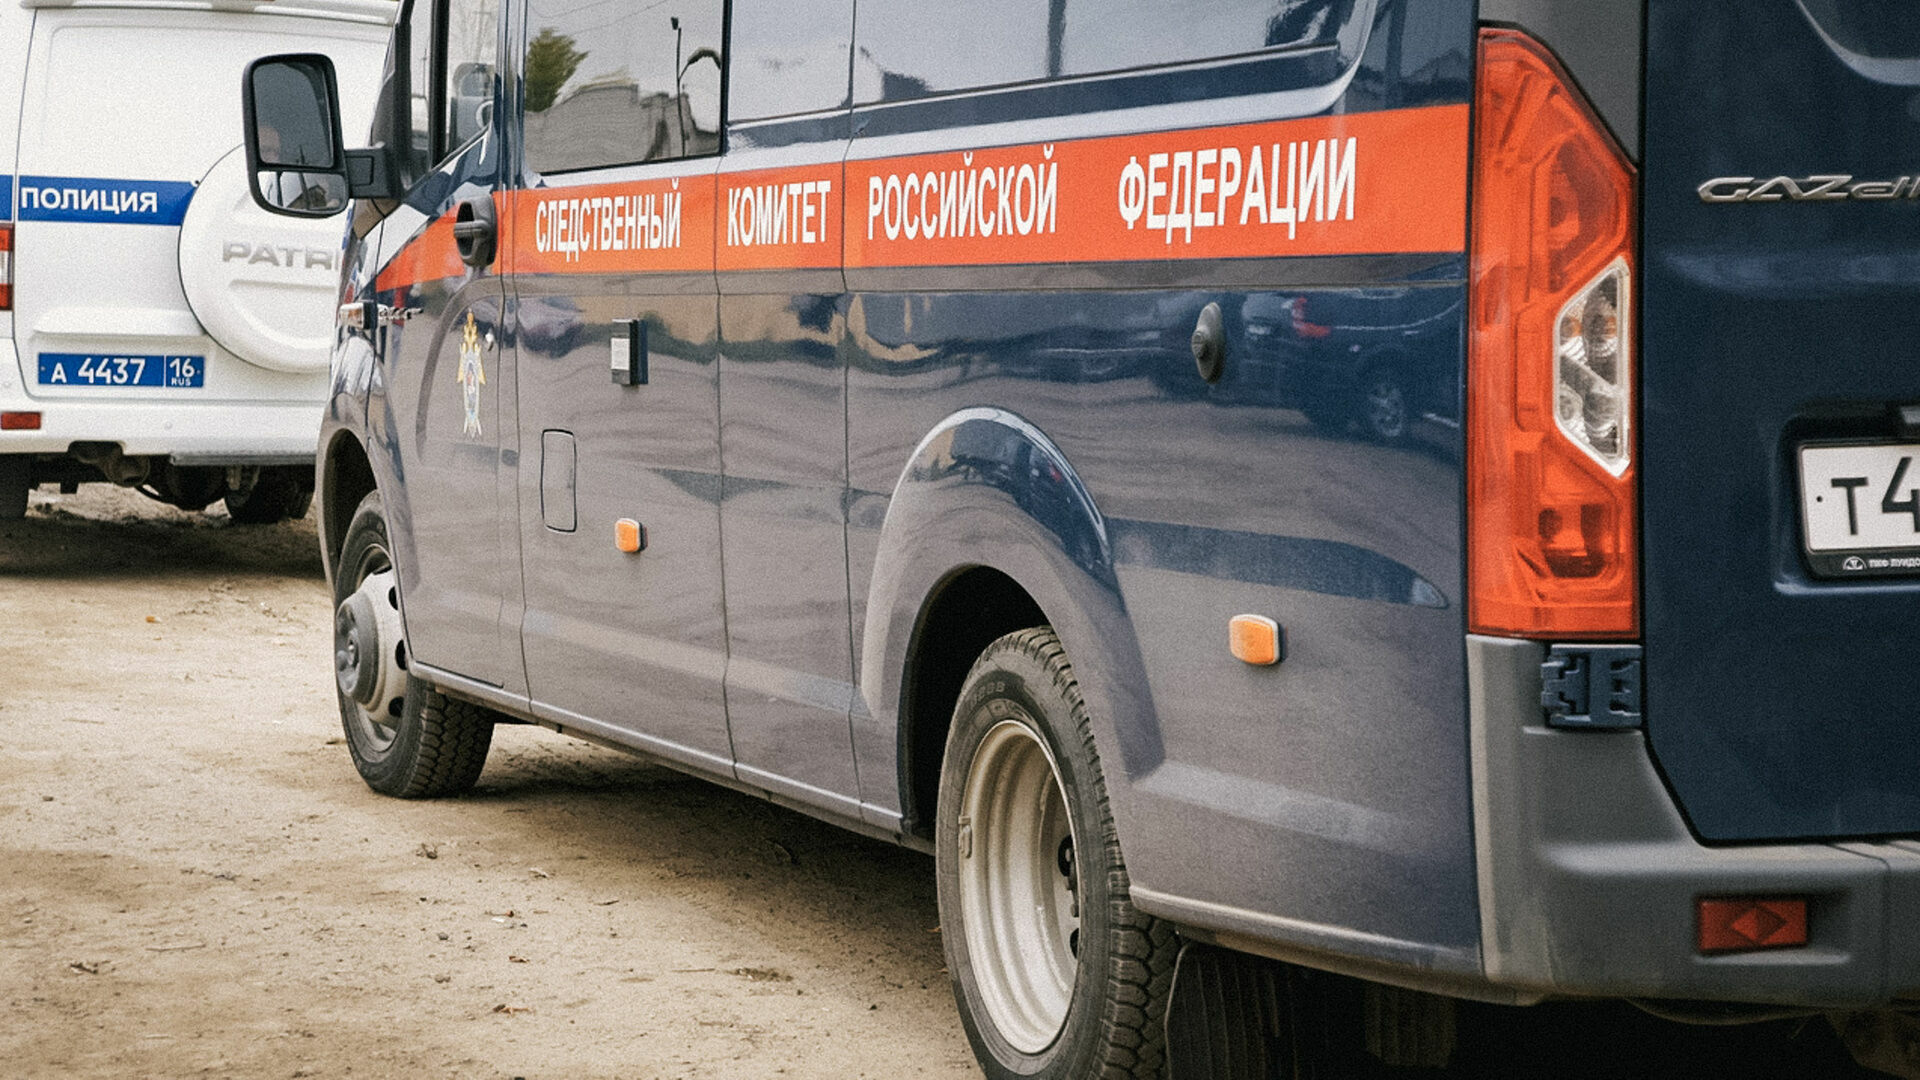 Следователи заинтересовались аварией с автобусами в Нижнем Новгороде